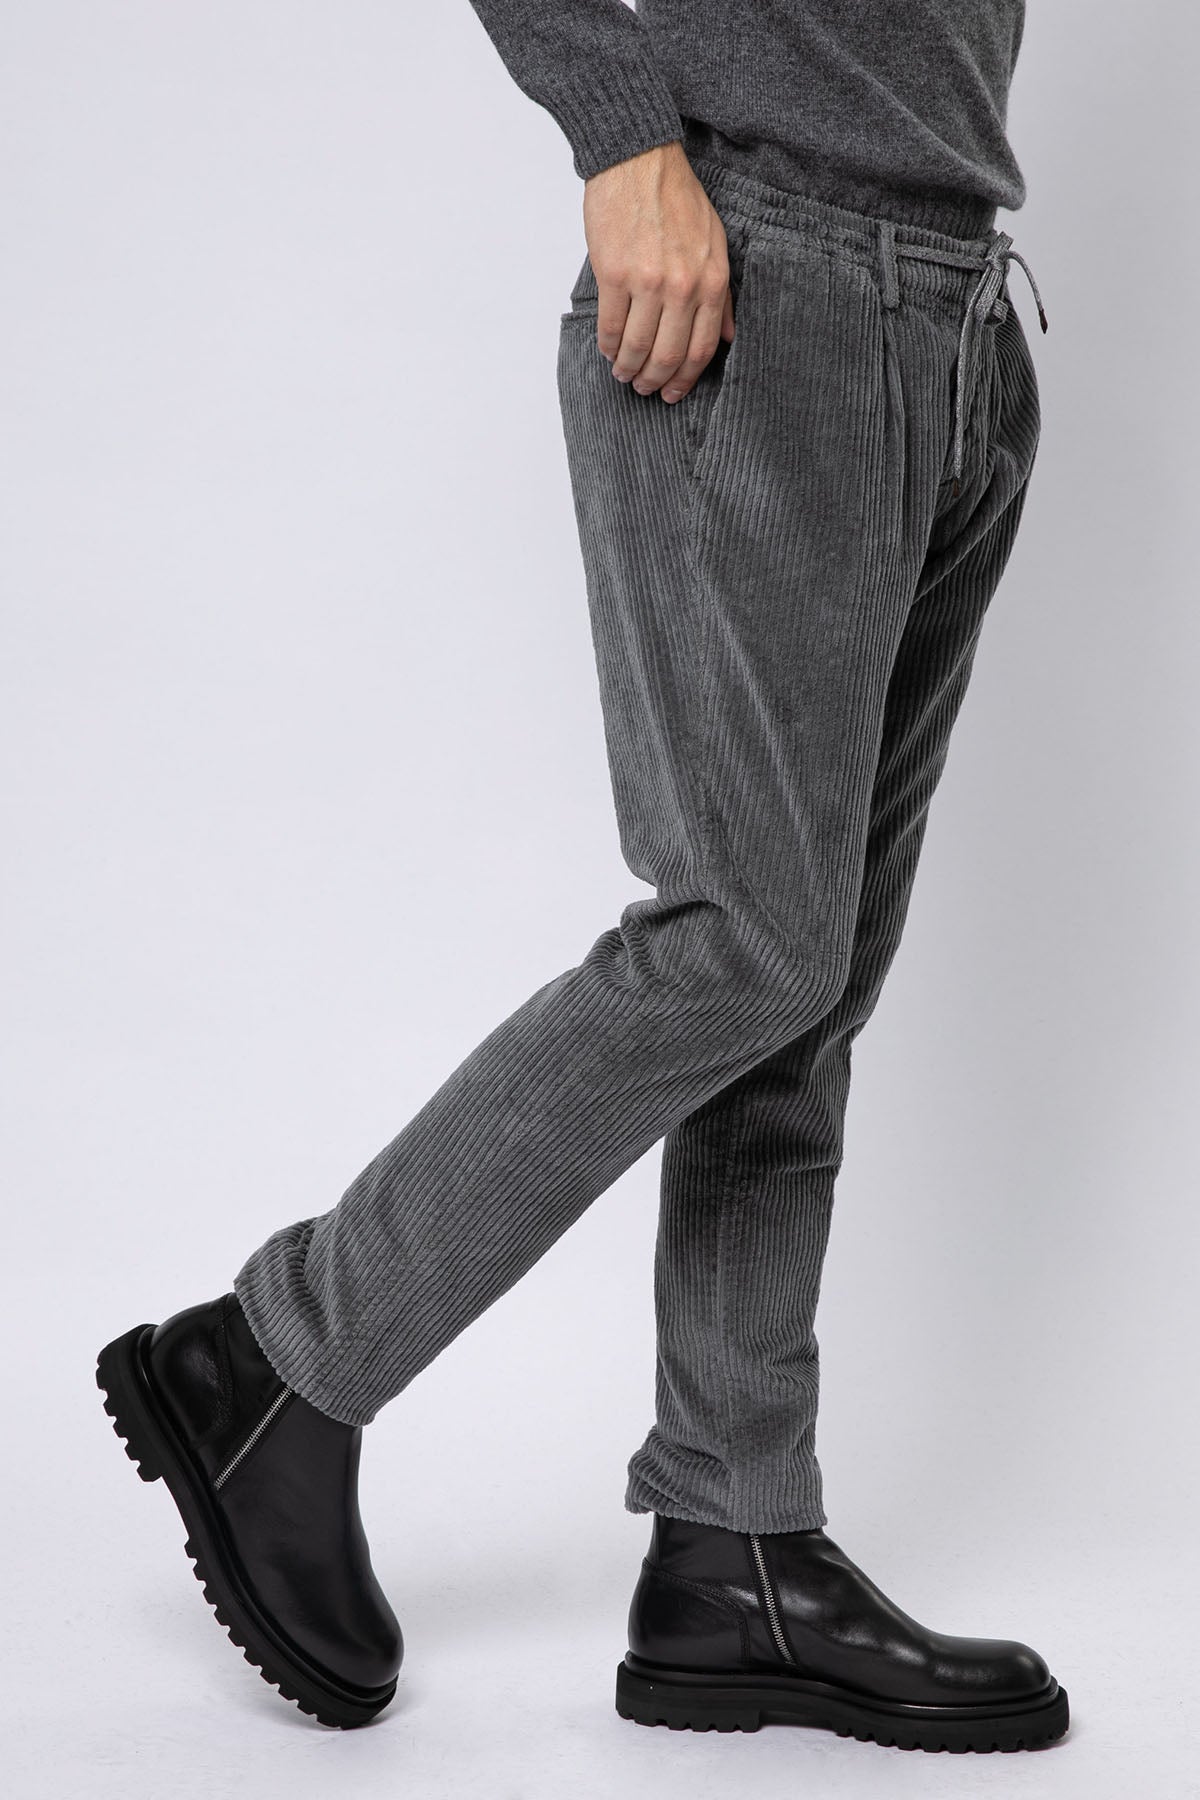 Fradi Smooth Fit Fitilli Kadife Beli Lastikli Tek Pile Streç Pantolon-Libas Trendy Fashion Store